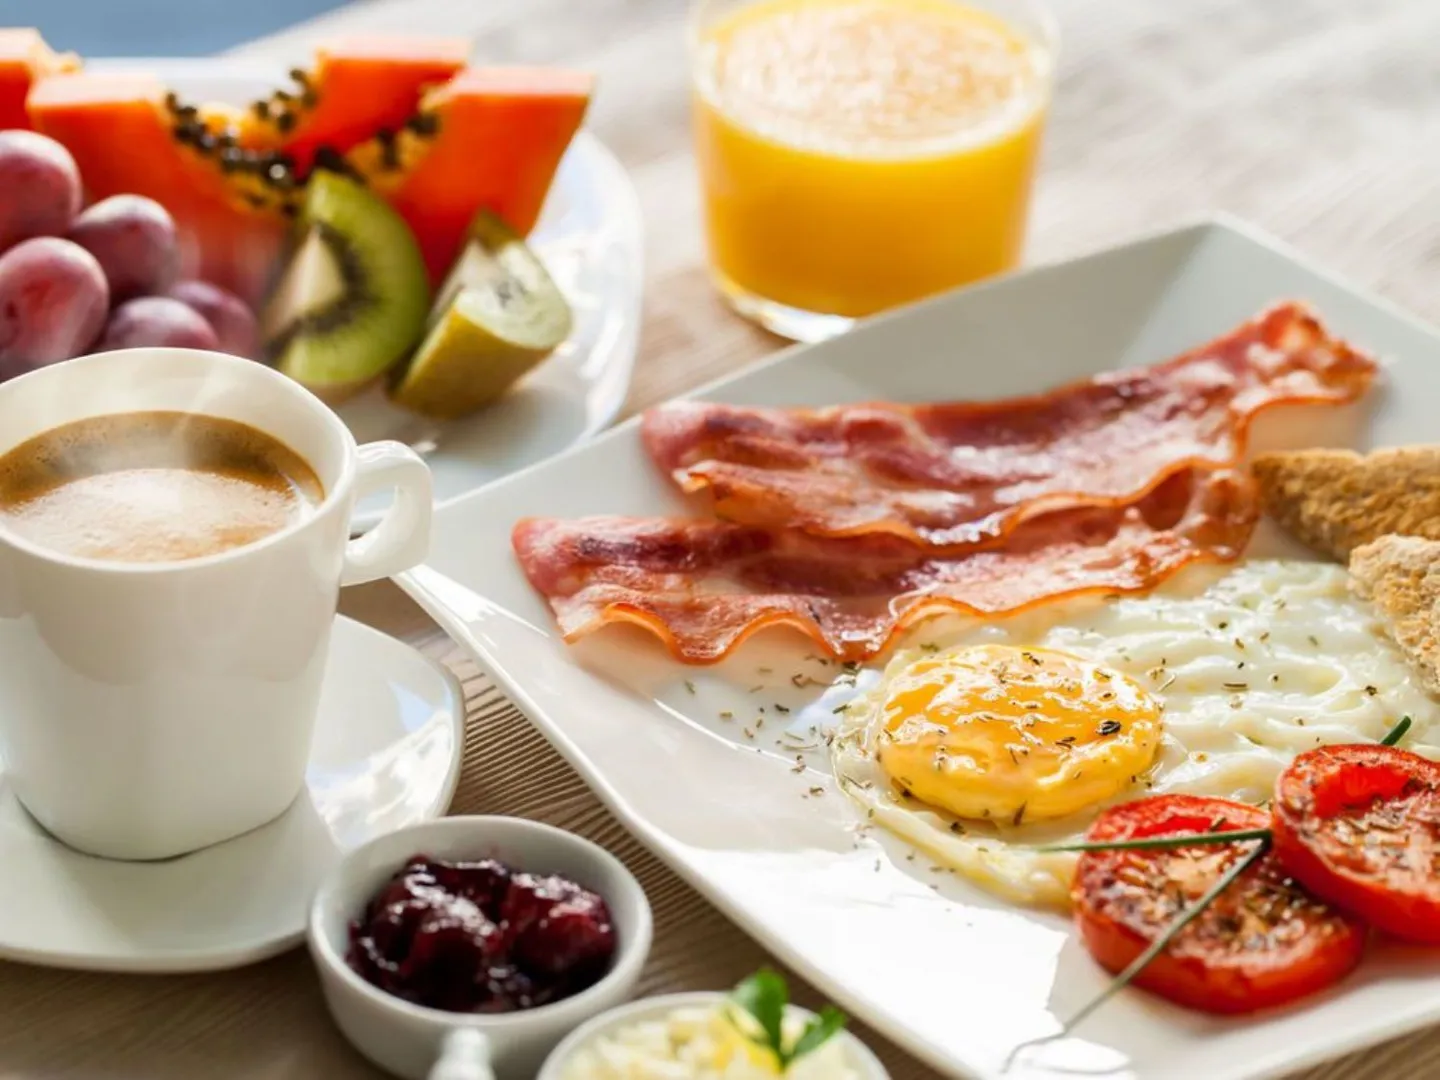 Завтрак: яичница/омлет с беконом, каша на любой вкус, чай/кофе 150-250 руб